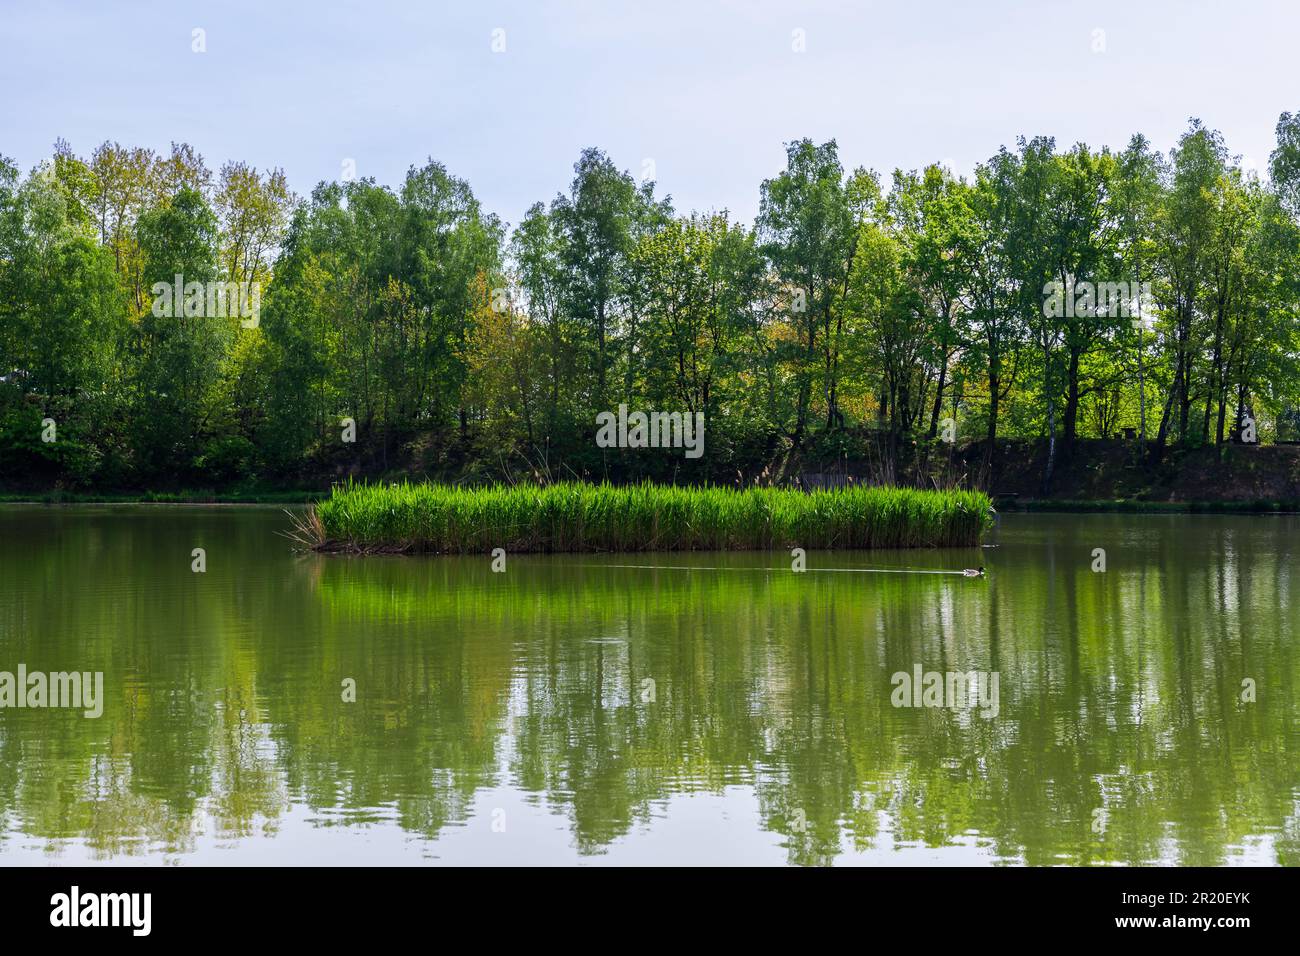 Piccolo lago Rzesa situato nel Parco di Bazantarnia a Siemianowice, Slesia, Polonia. Piccola isola coperta di canne. Singola anatra selvatica nuoto vicino. Tranqui Foto Stock